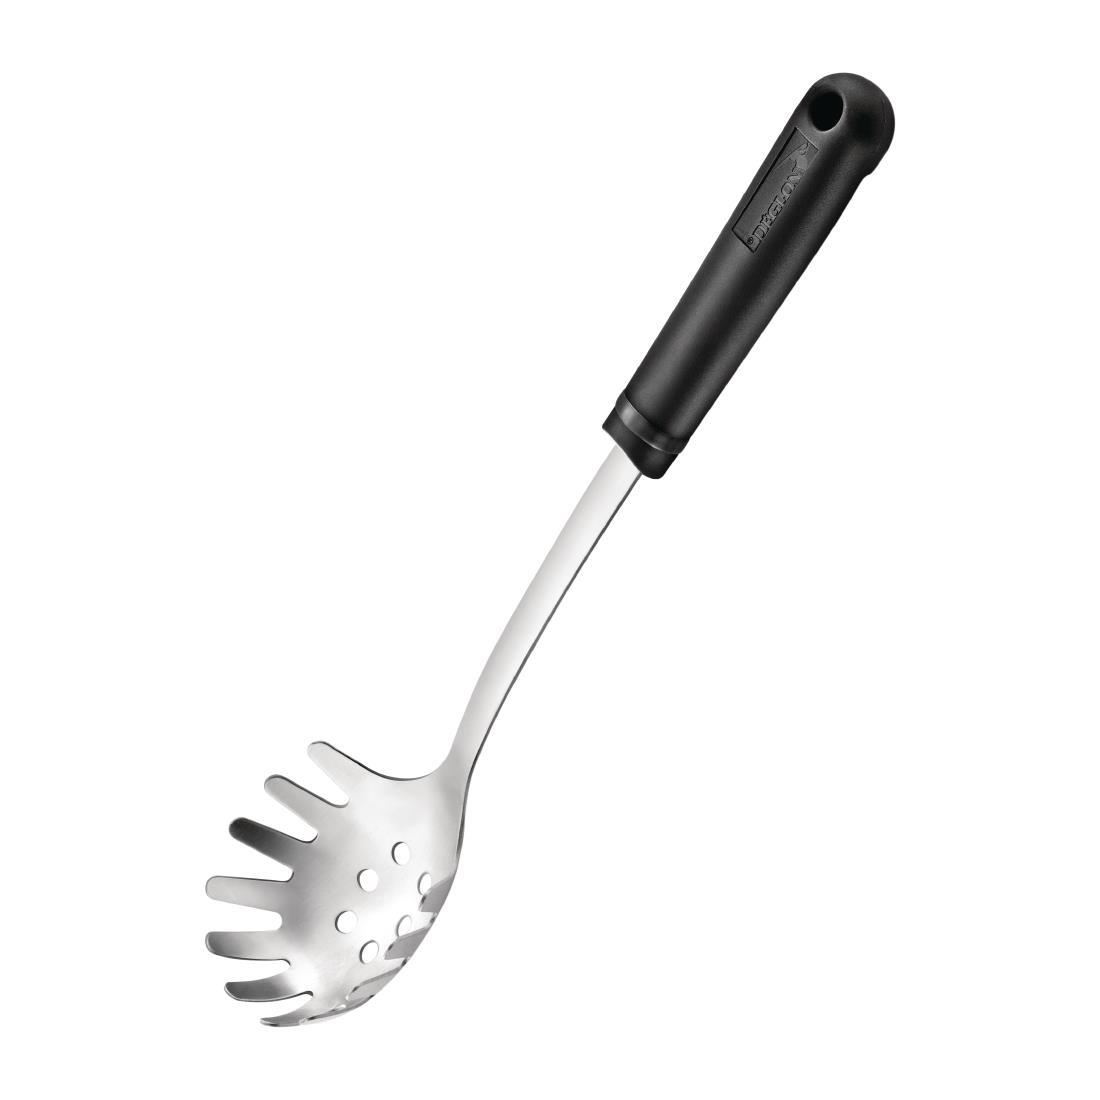 Deglon Glisse Spaghetti Spoon 320mm - DS239  - 1